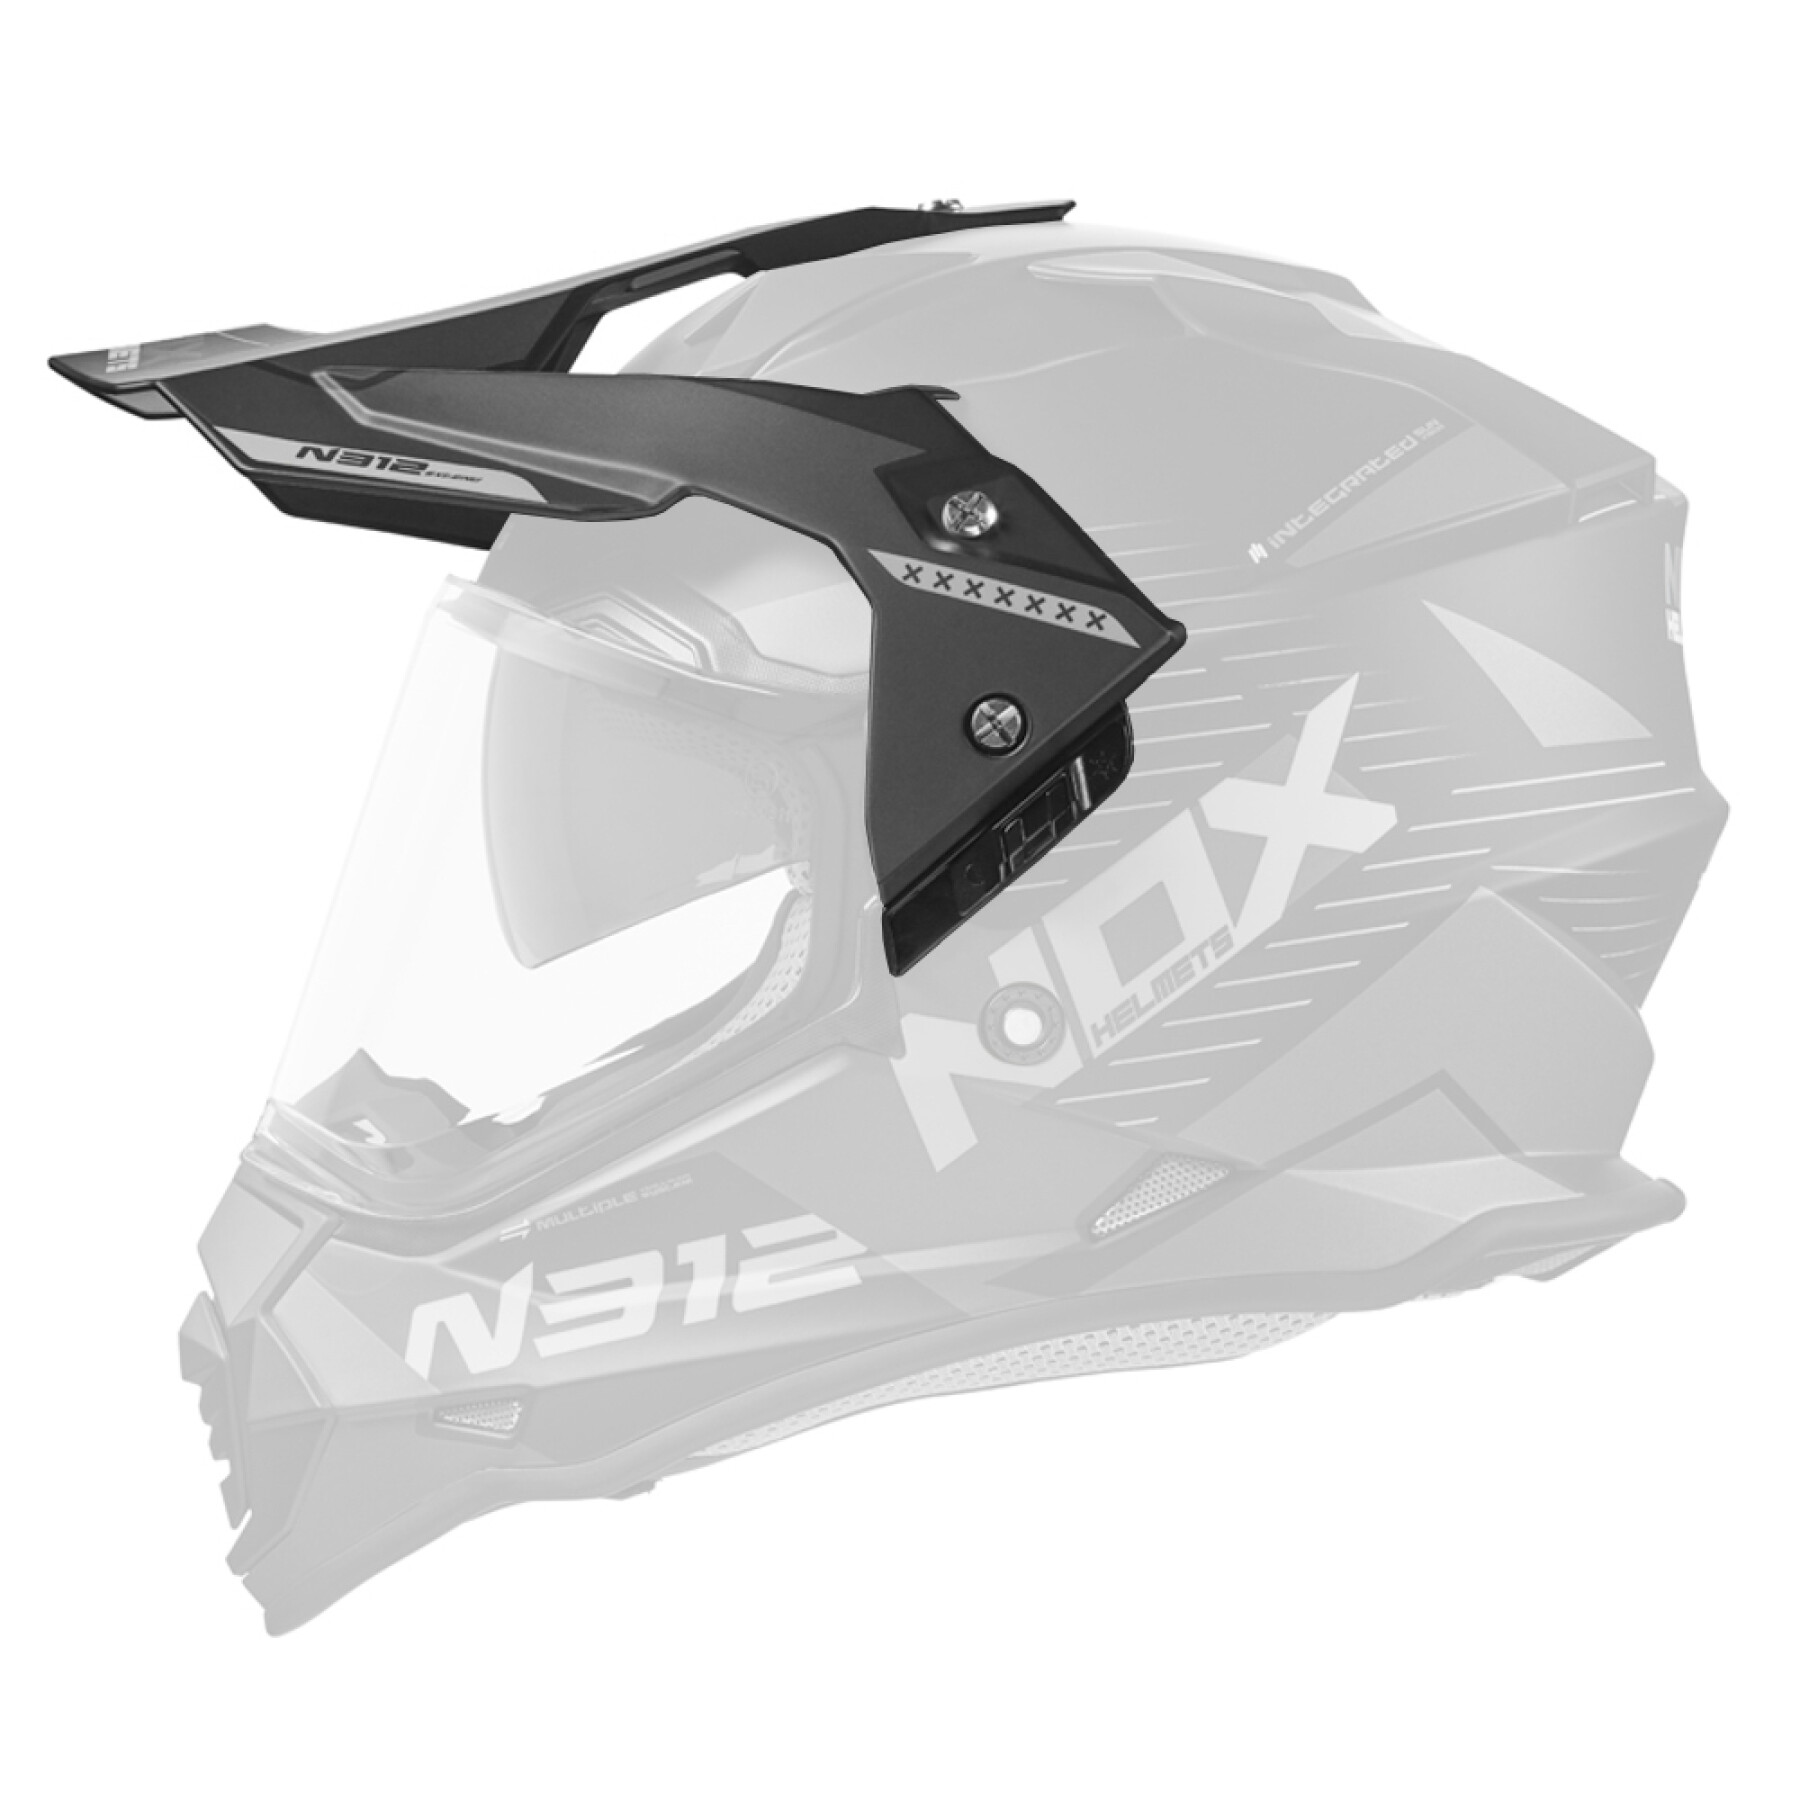 Viseira para capacete de motocross Nox 312 Extend